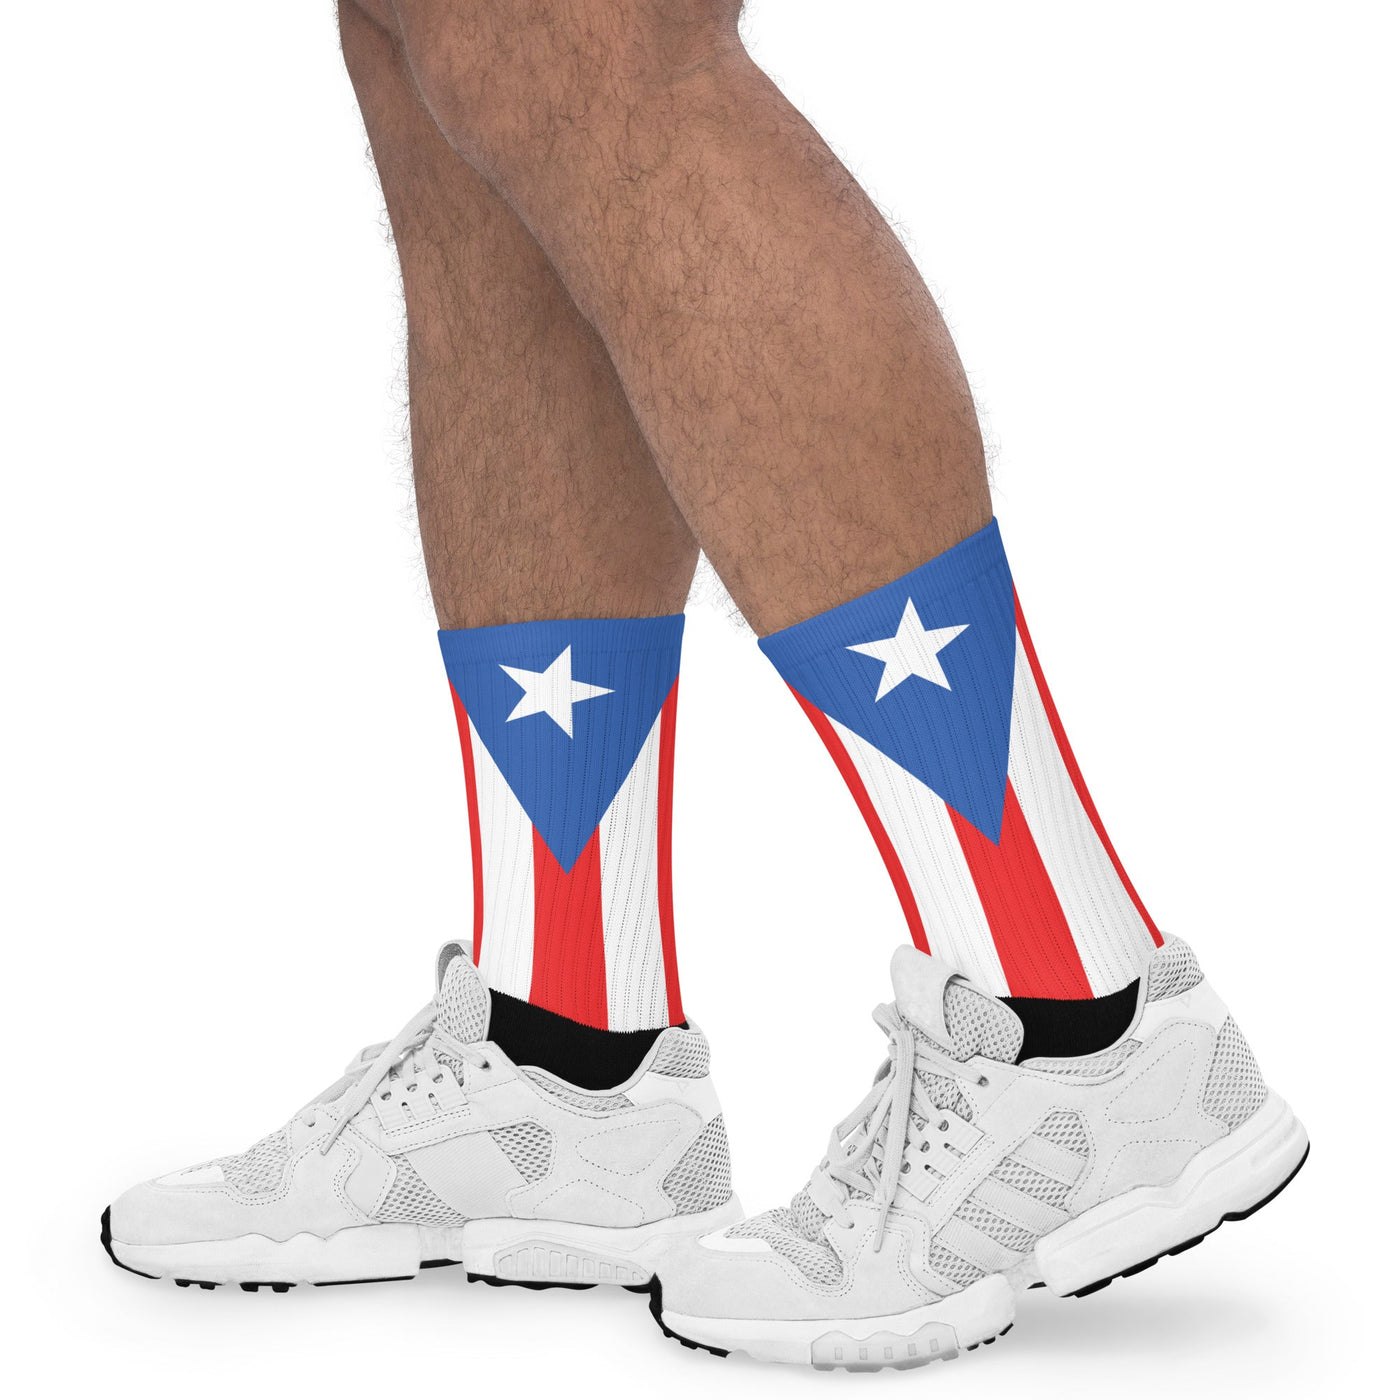 Puerto Rico Socks - Ezra's Clothing